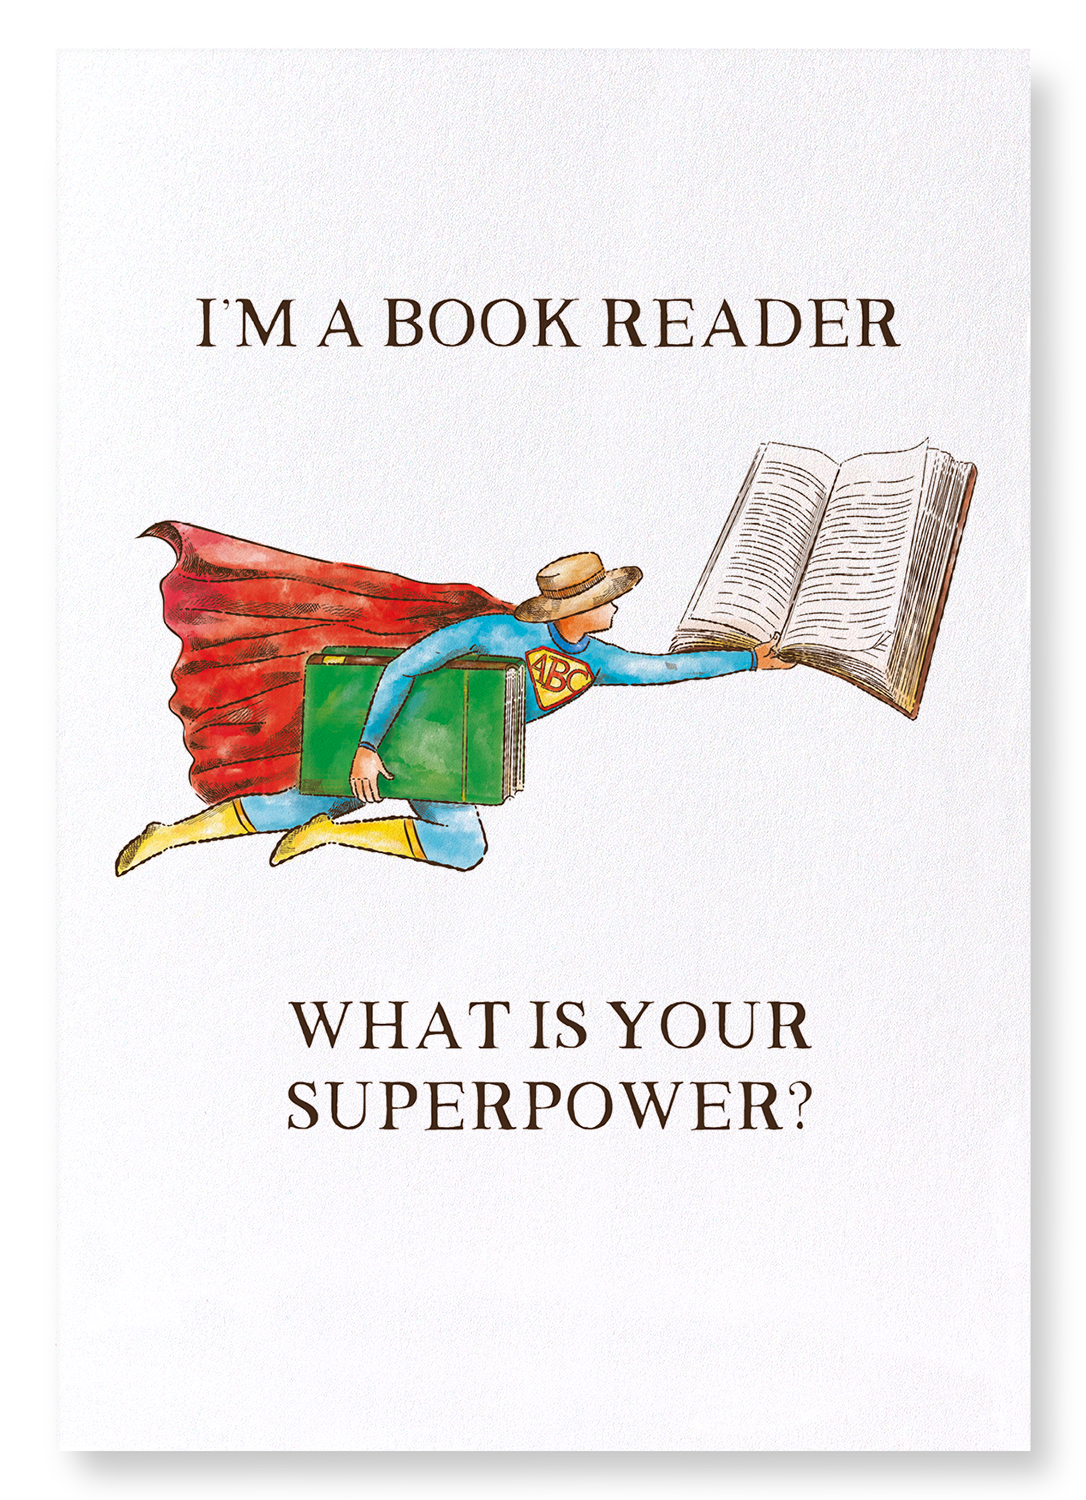 READER SUPERPOWER